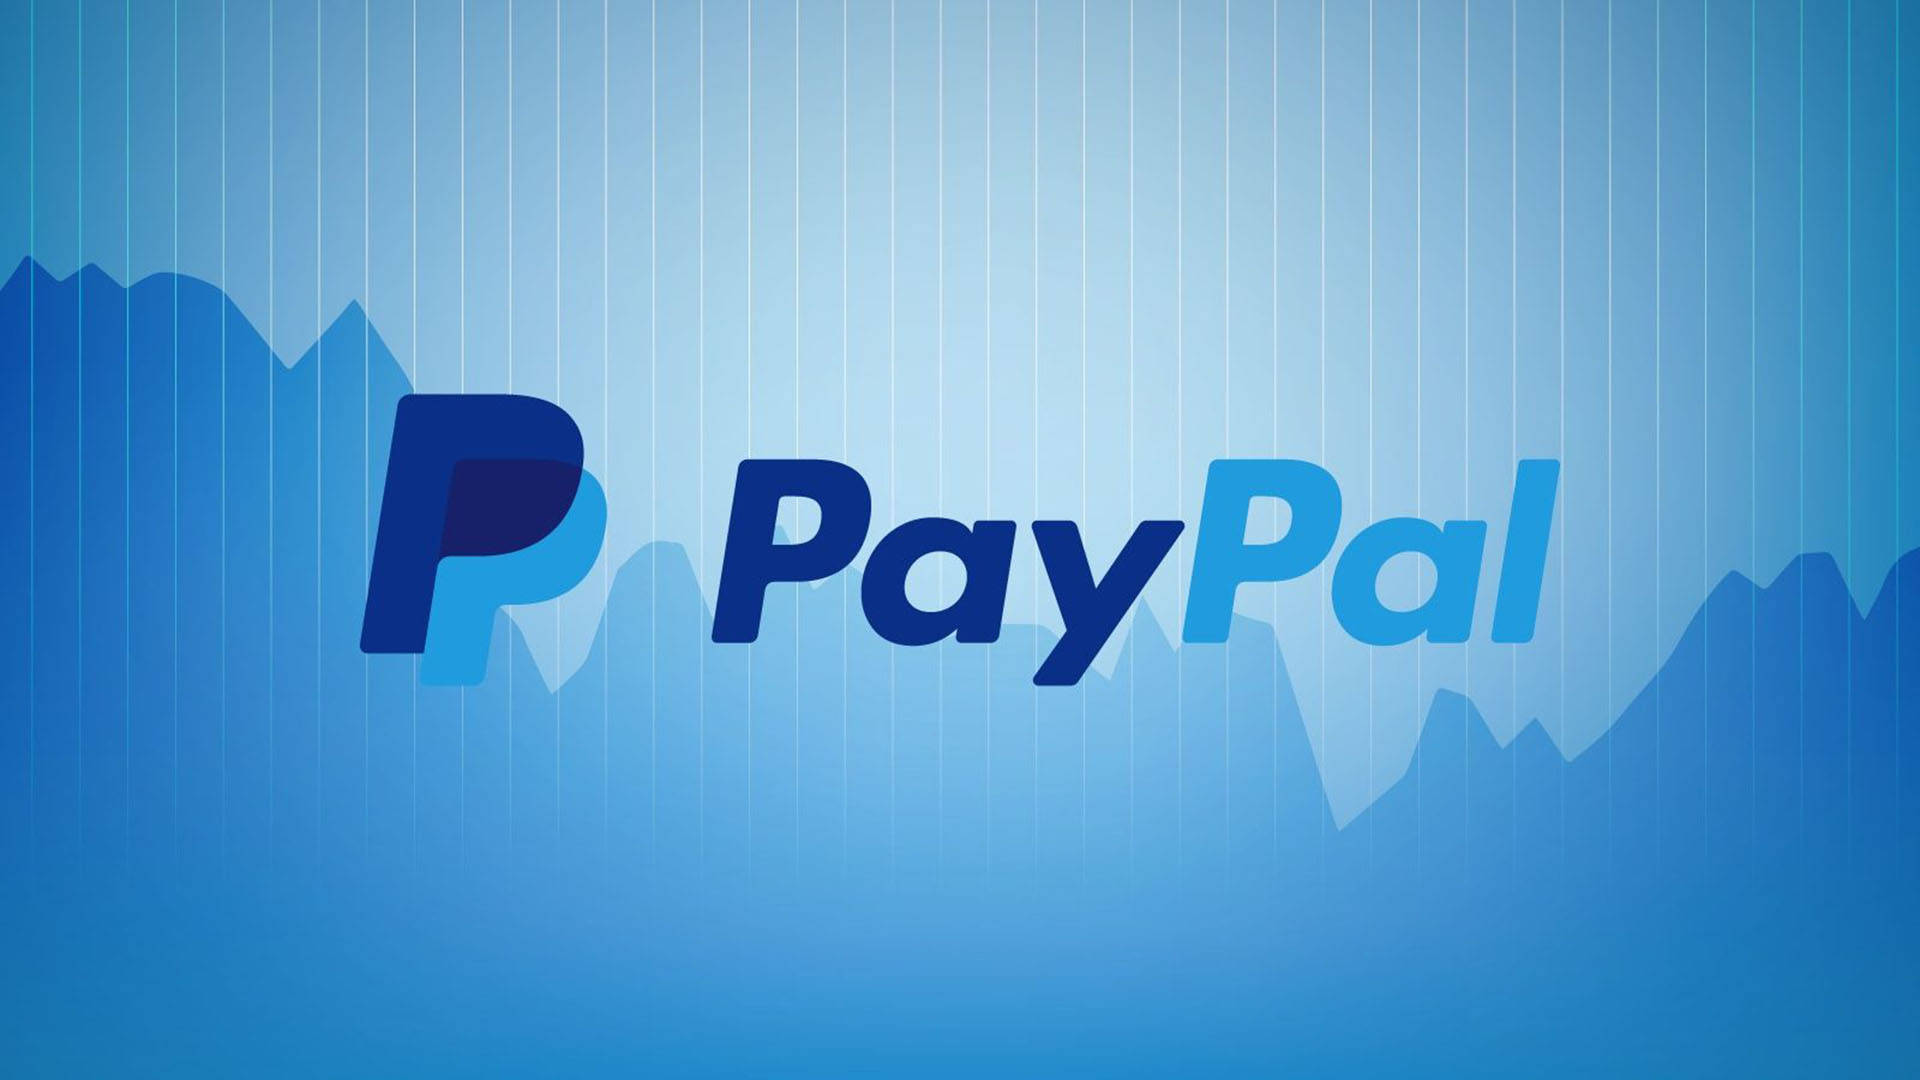 Paypal Logo Graph Art Wallpaper